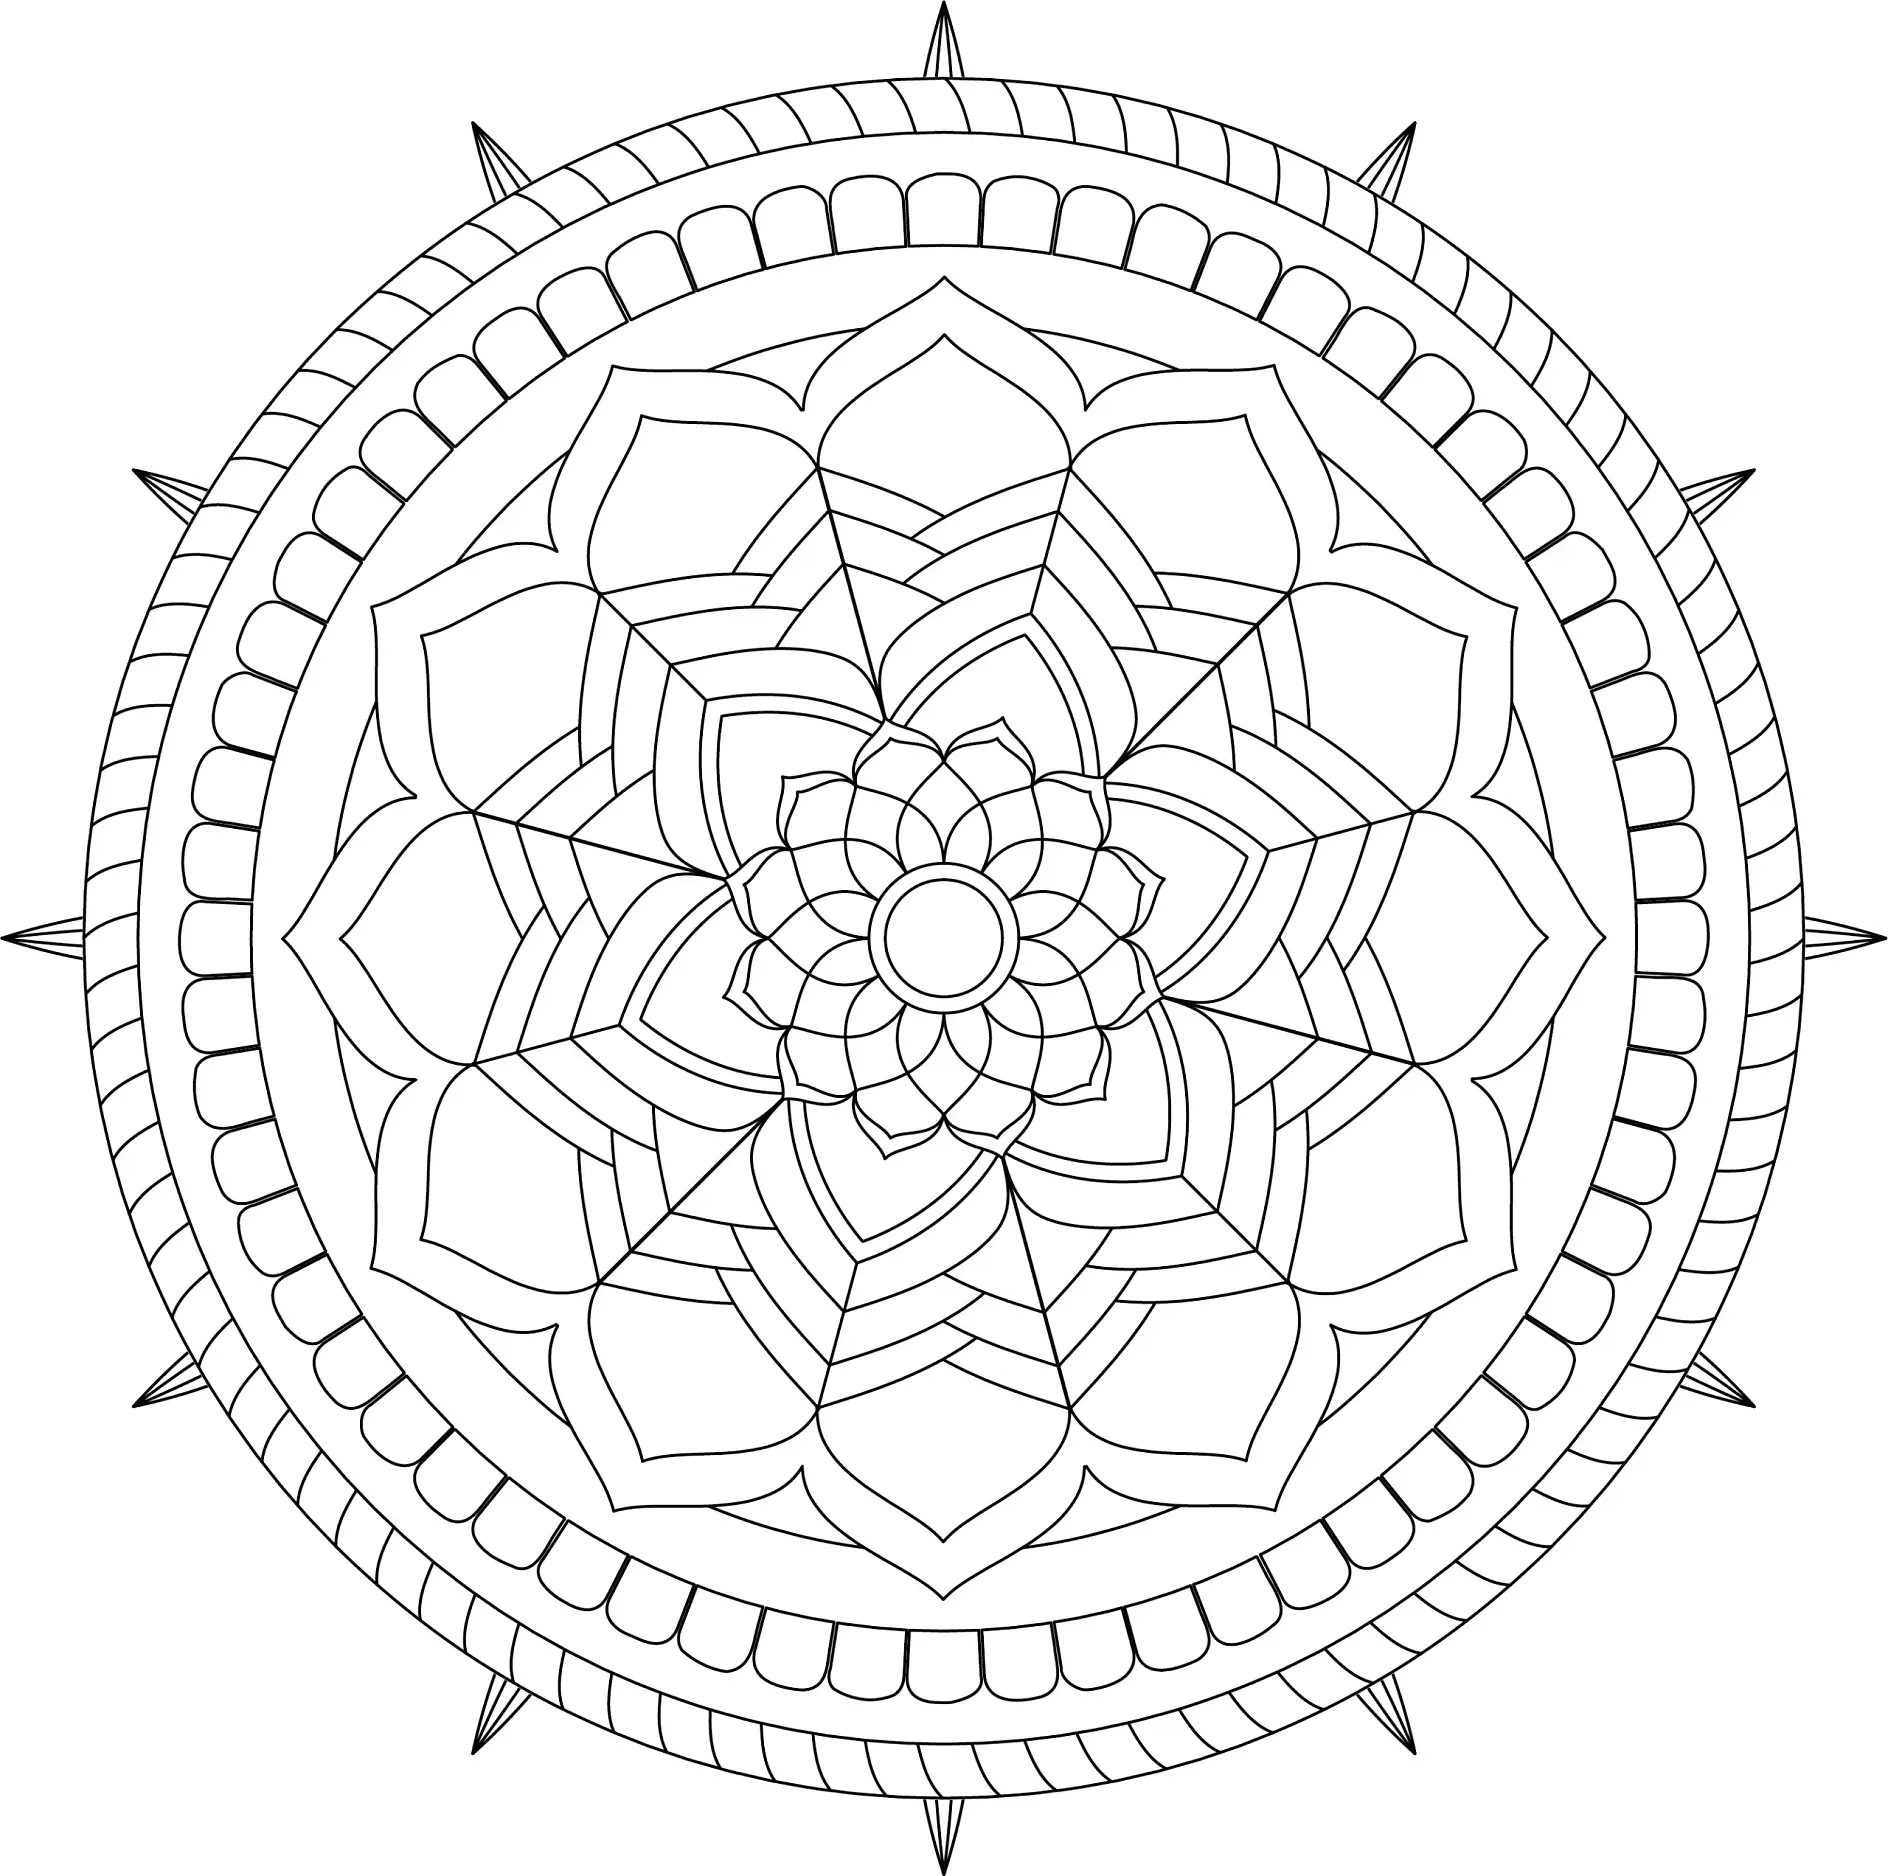 Ausmalbild Mandala mit symmetrischen Blütenblättern und geometrischen Mustern